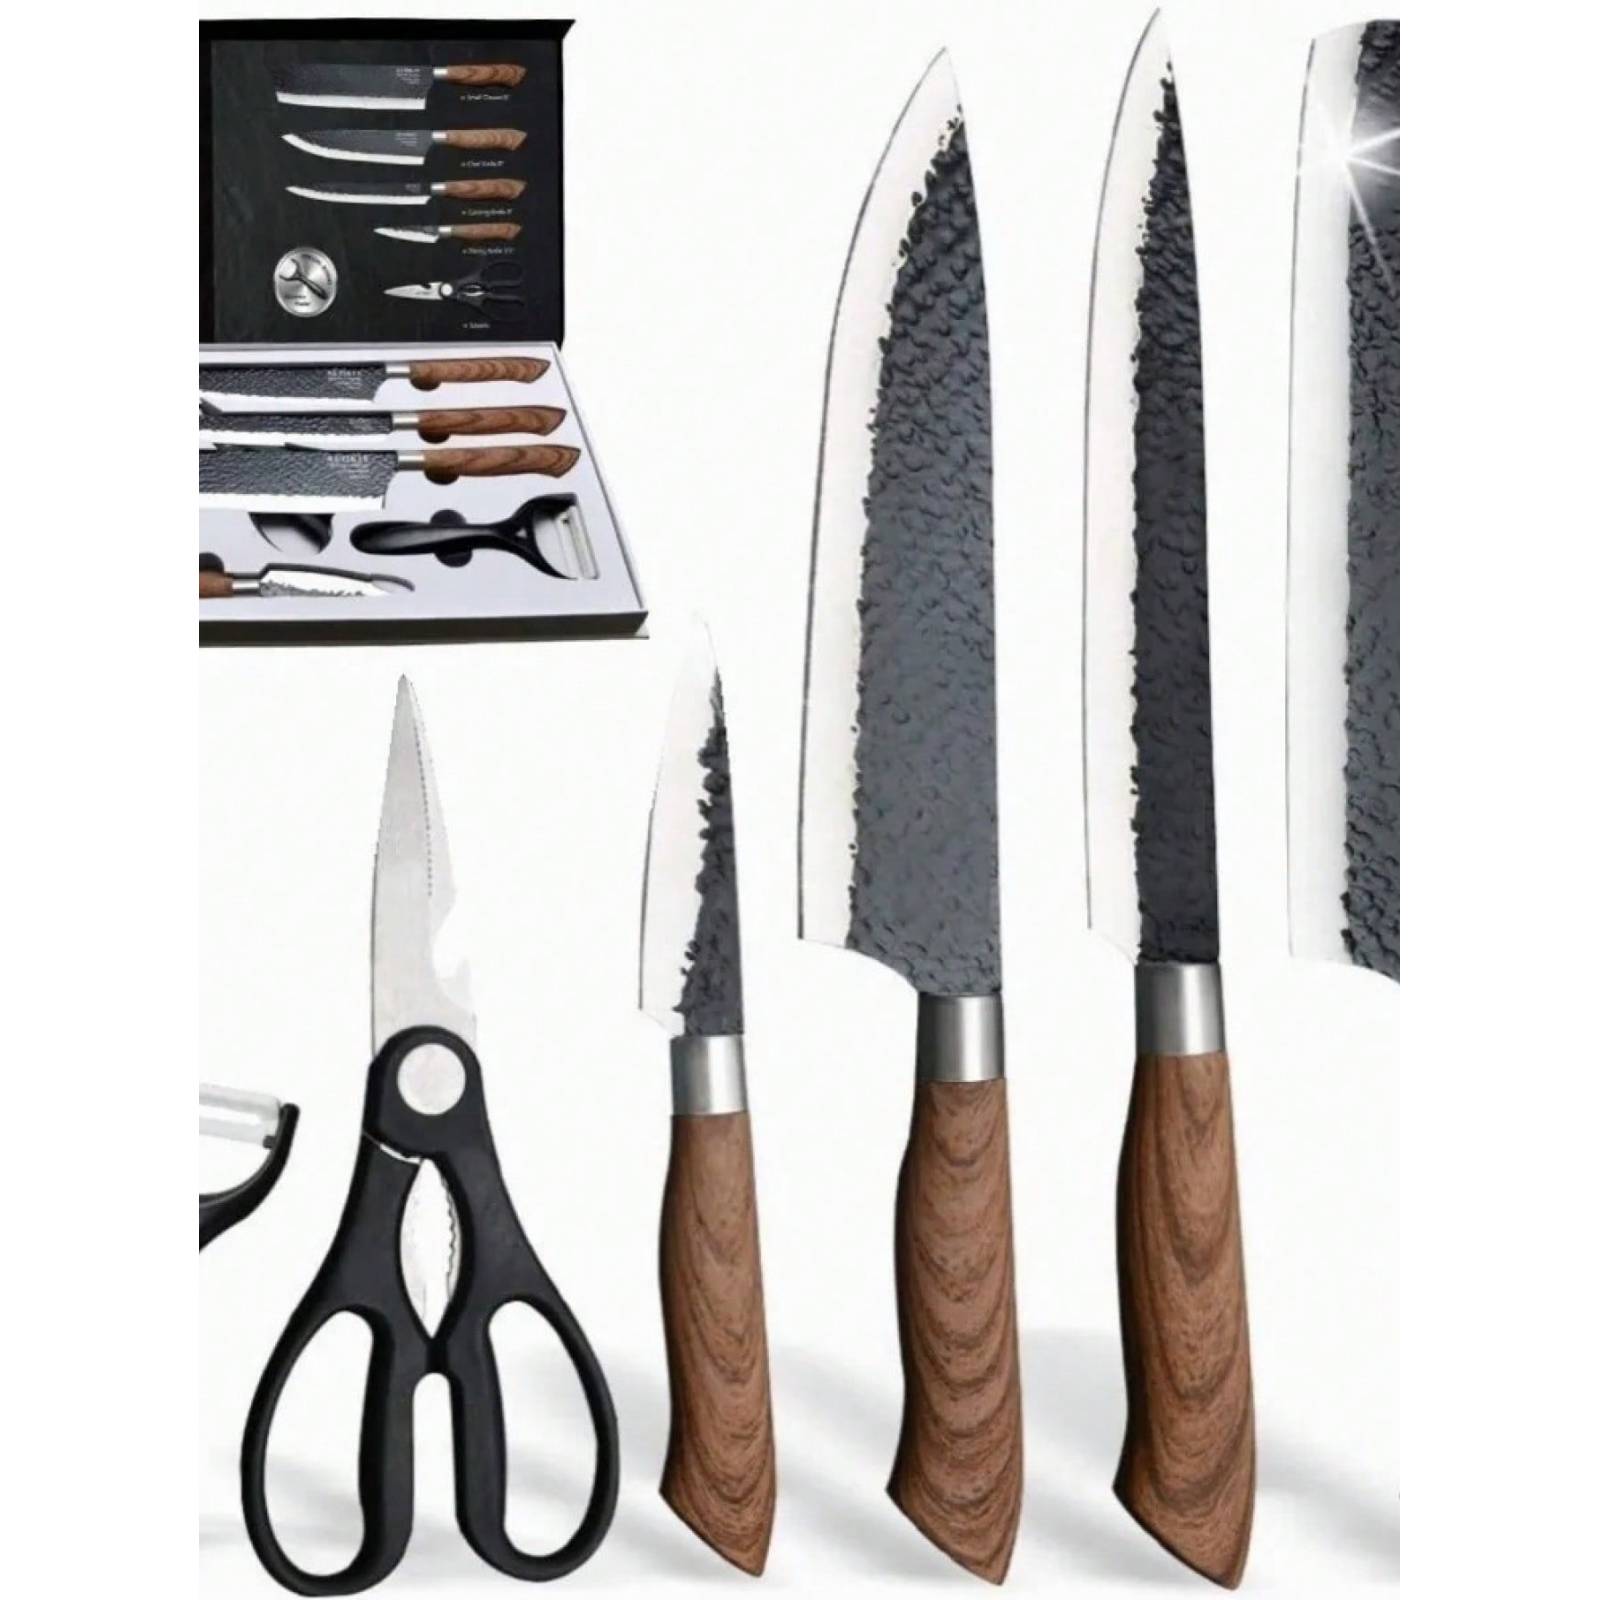 Juegos de cuchillos · Cuchillos de cocina · El Corte Inglés (38)